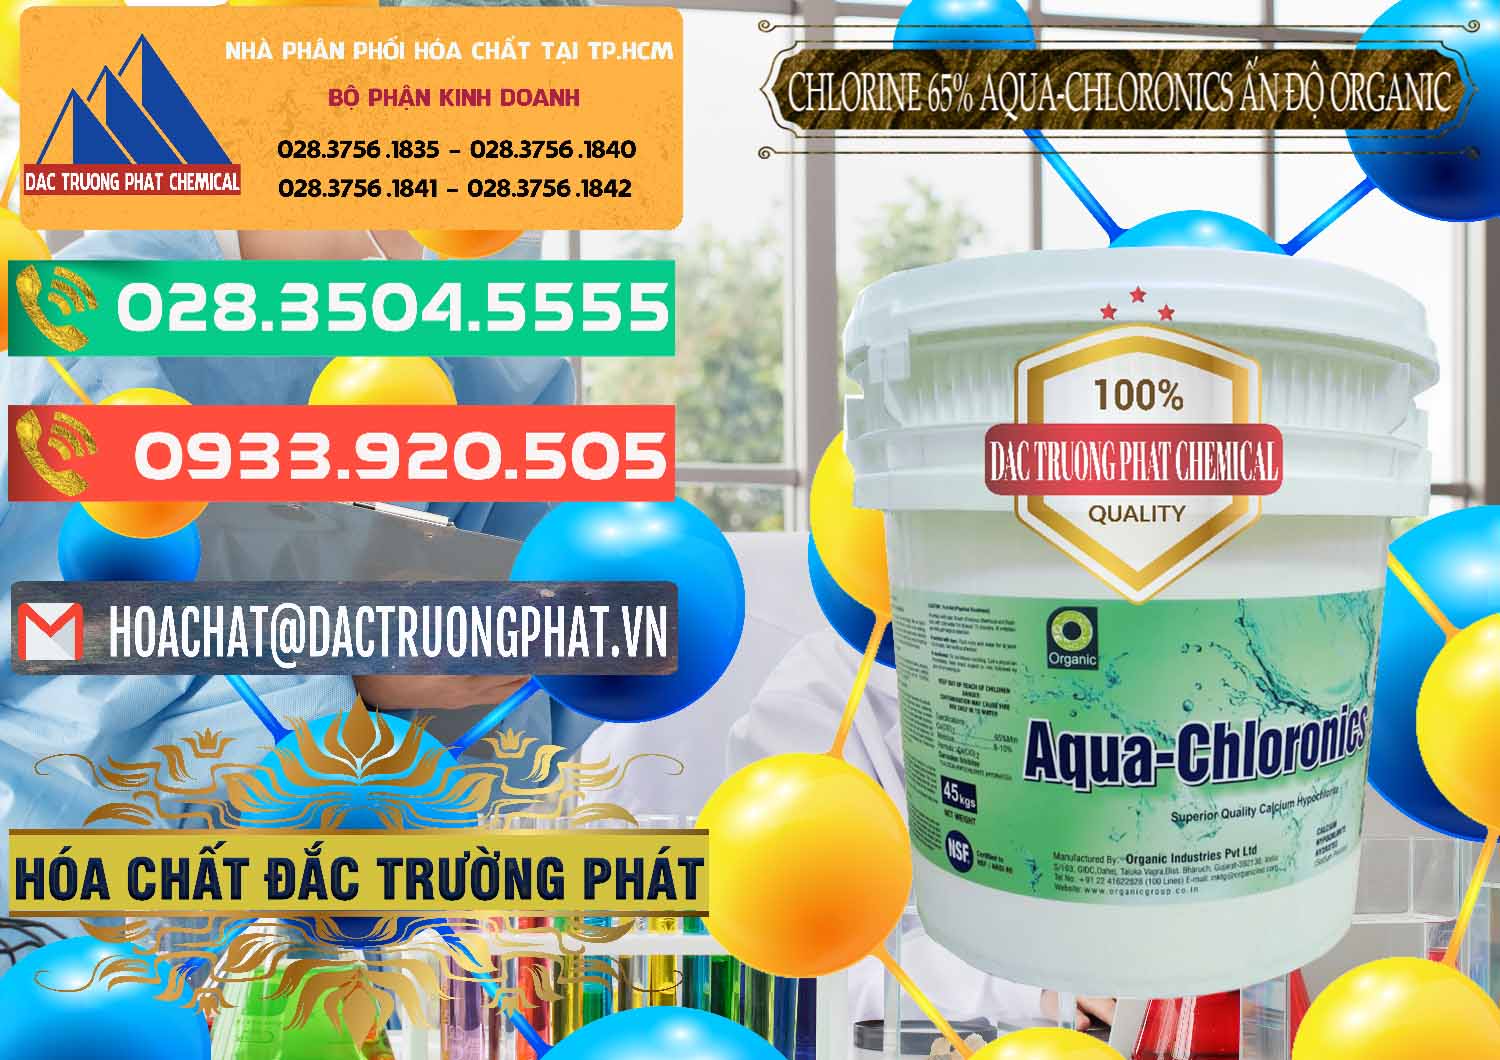 Nhập khẩu _ bán Chlorine – Clorin 65% Aqua-Chloronics Ấn Độ Organic India - 0210 - Phân phối - kinh doanh hóa chất tại TP.HCM - congtyhoachat.com.vn